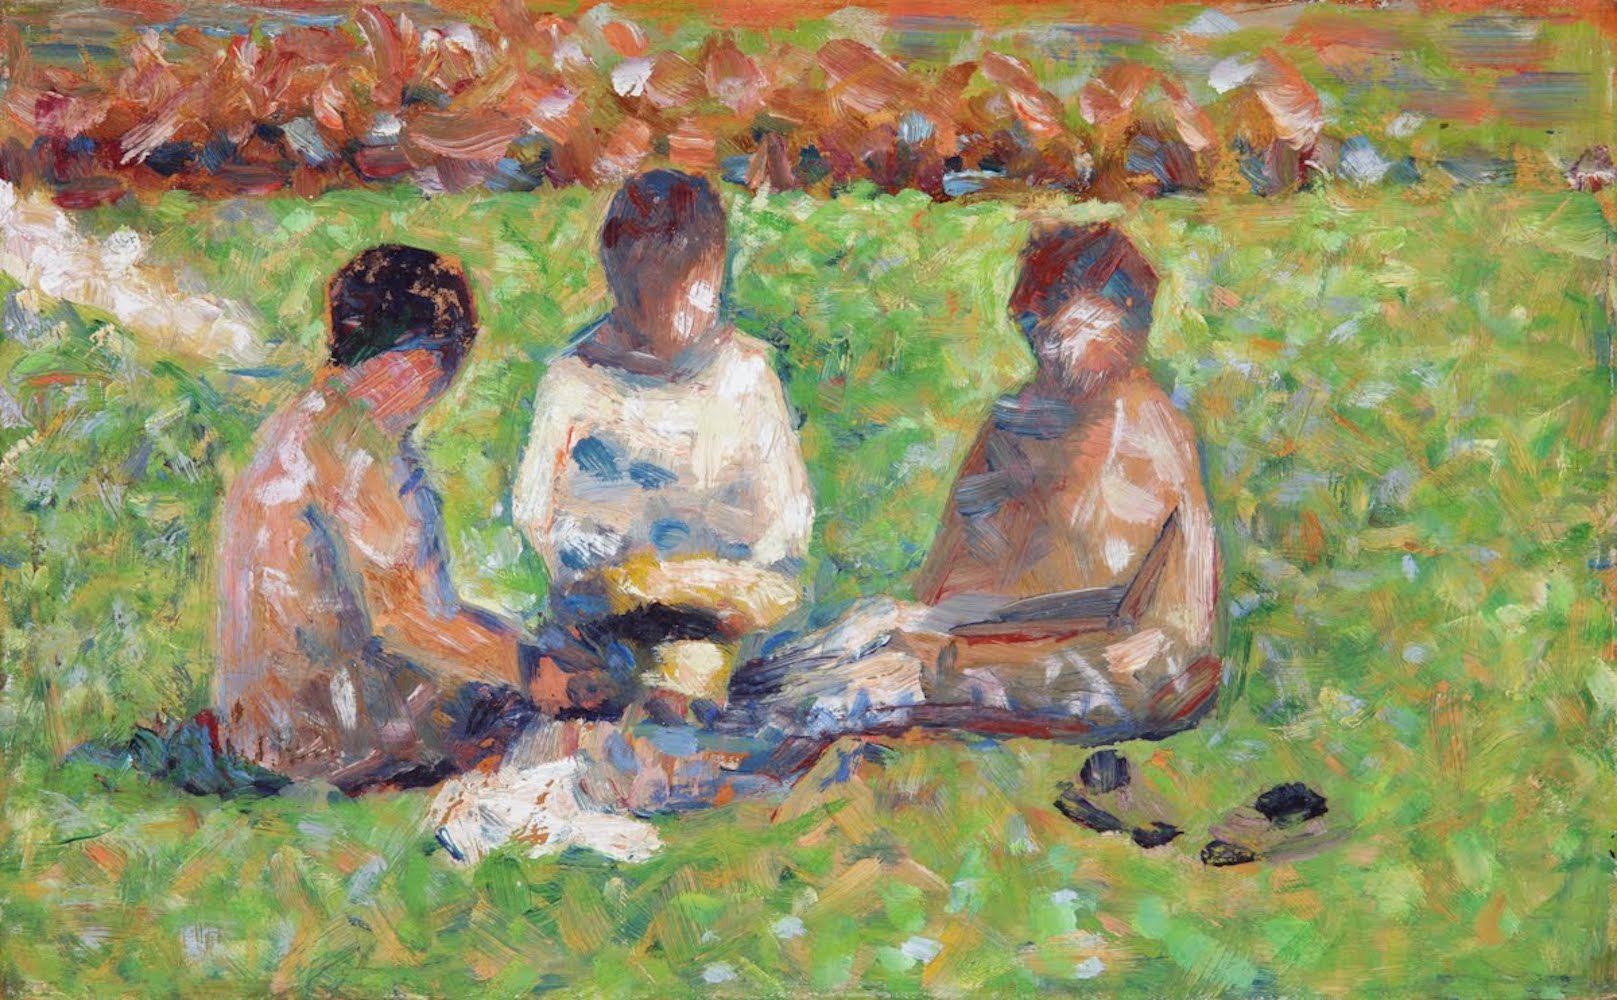 野餐 by 喬治 秀拉 - 約 1885 年 - 15.9 x 25.4 釐米 